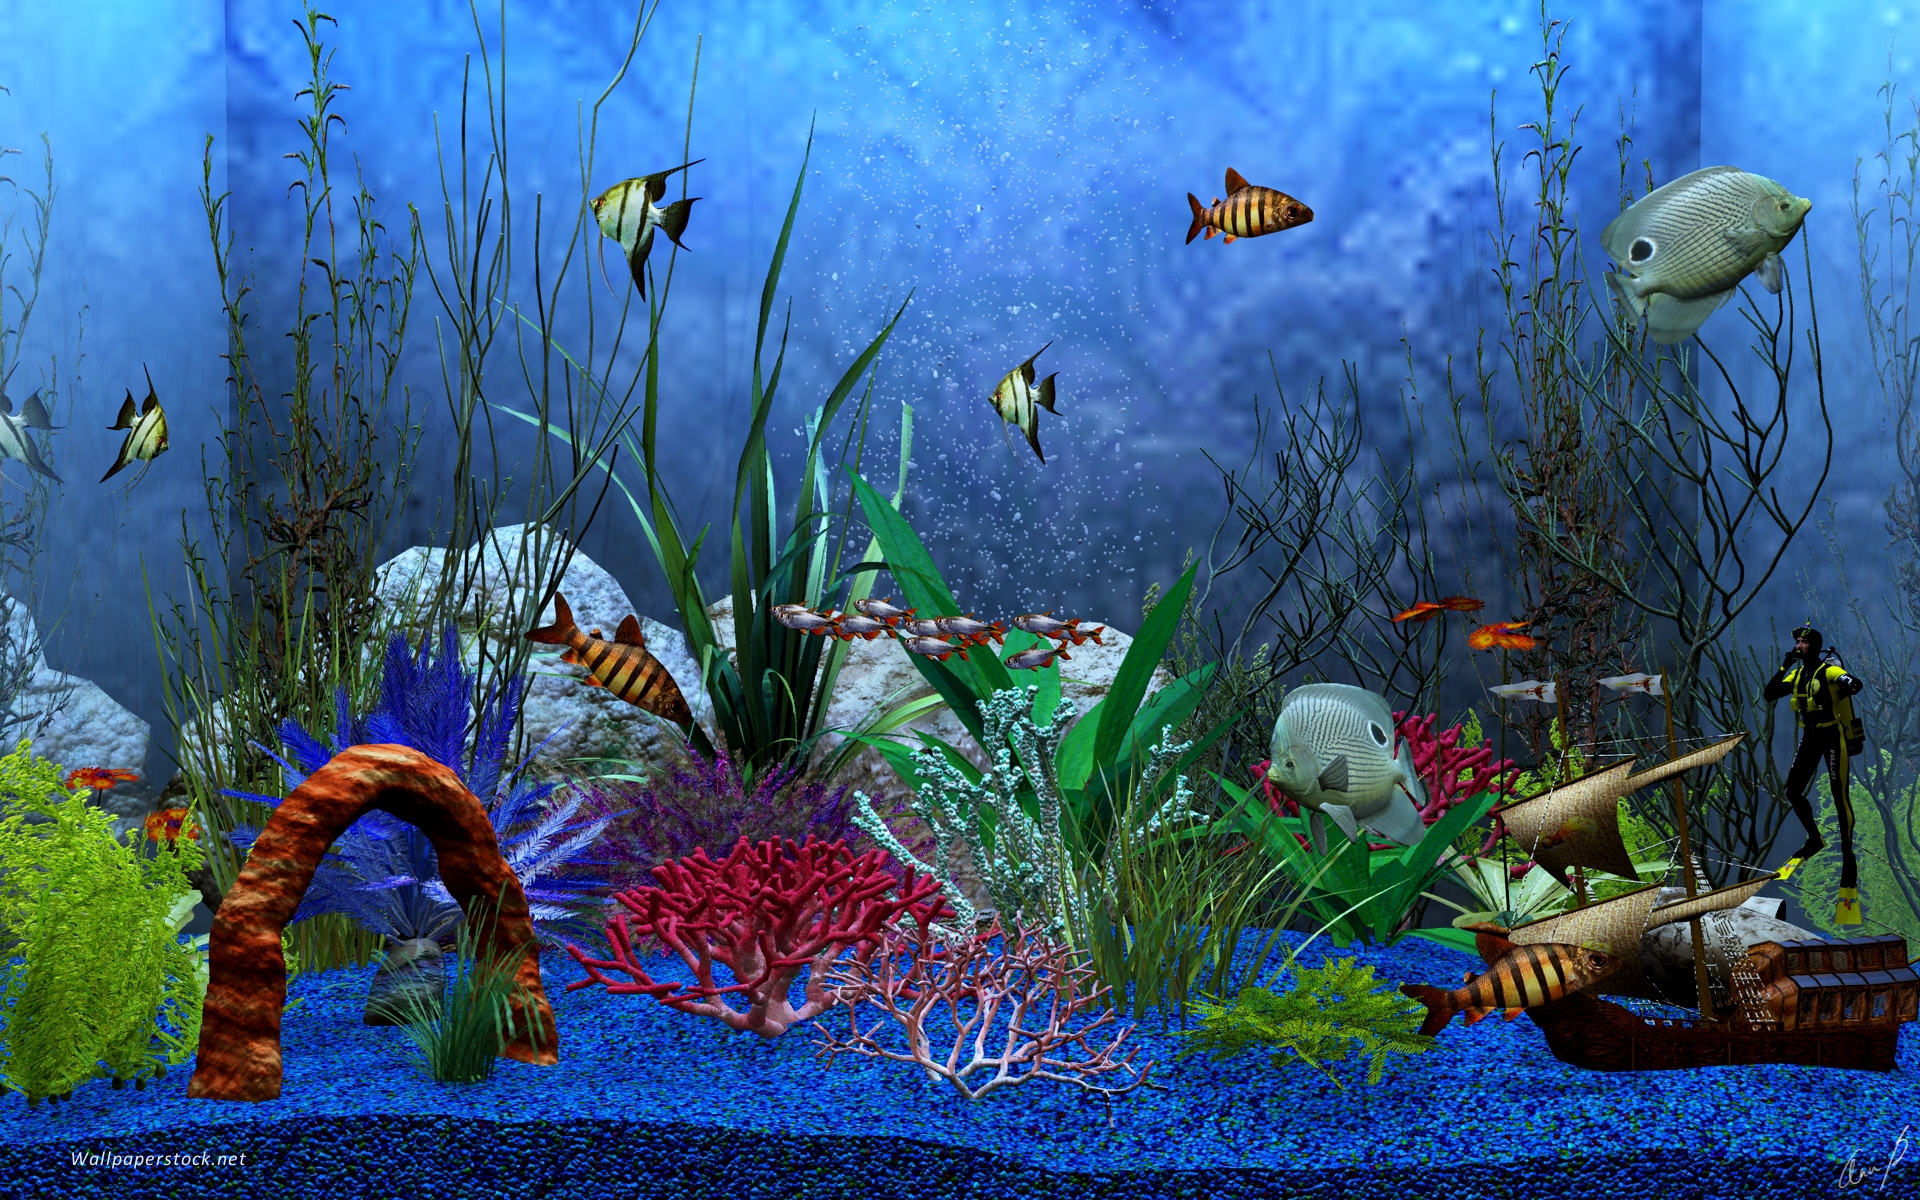 Biến màn hình của bạn thành một bể cá hoàn hảo với hình nền 3D bể cá. Hãy nhấn vào hình ảnh để bạn được ngập tràn trong không gian thực tế được tạo ra từ các loài cá xinh đẹp và đầy màu sắc.